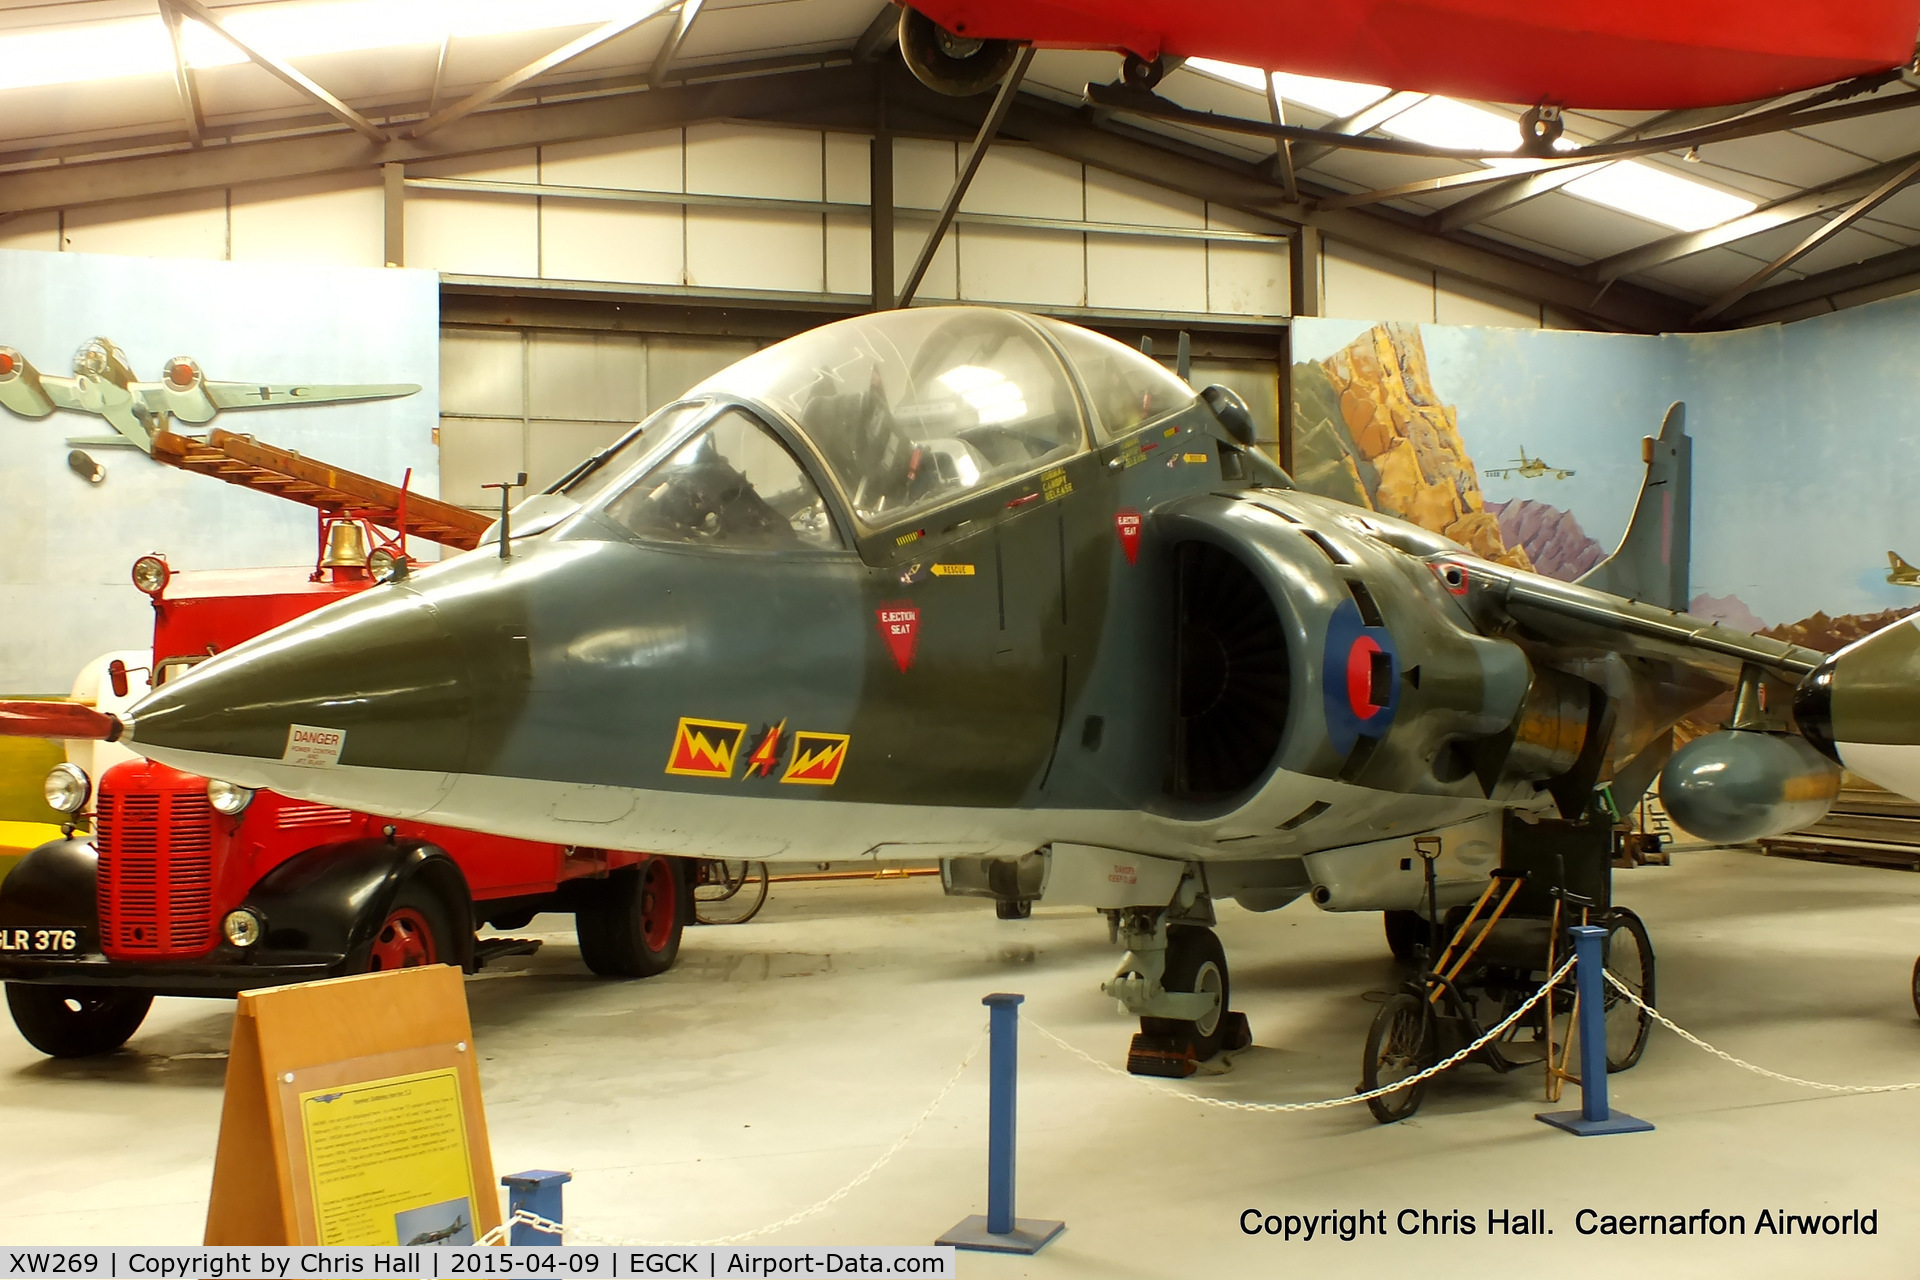 XW269, 1971 Hawker Siddeley Harrier T.4 C/N 212008, at Caernarfon Airworld